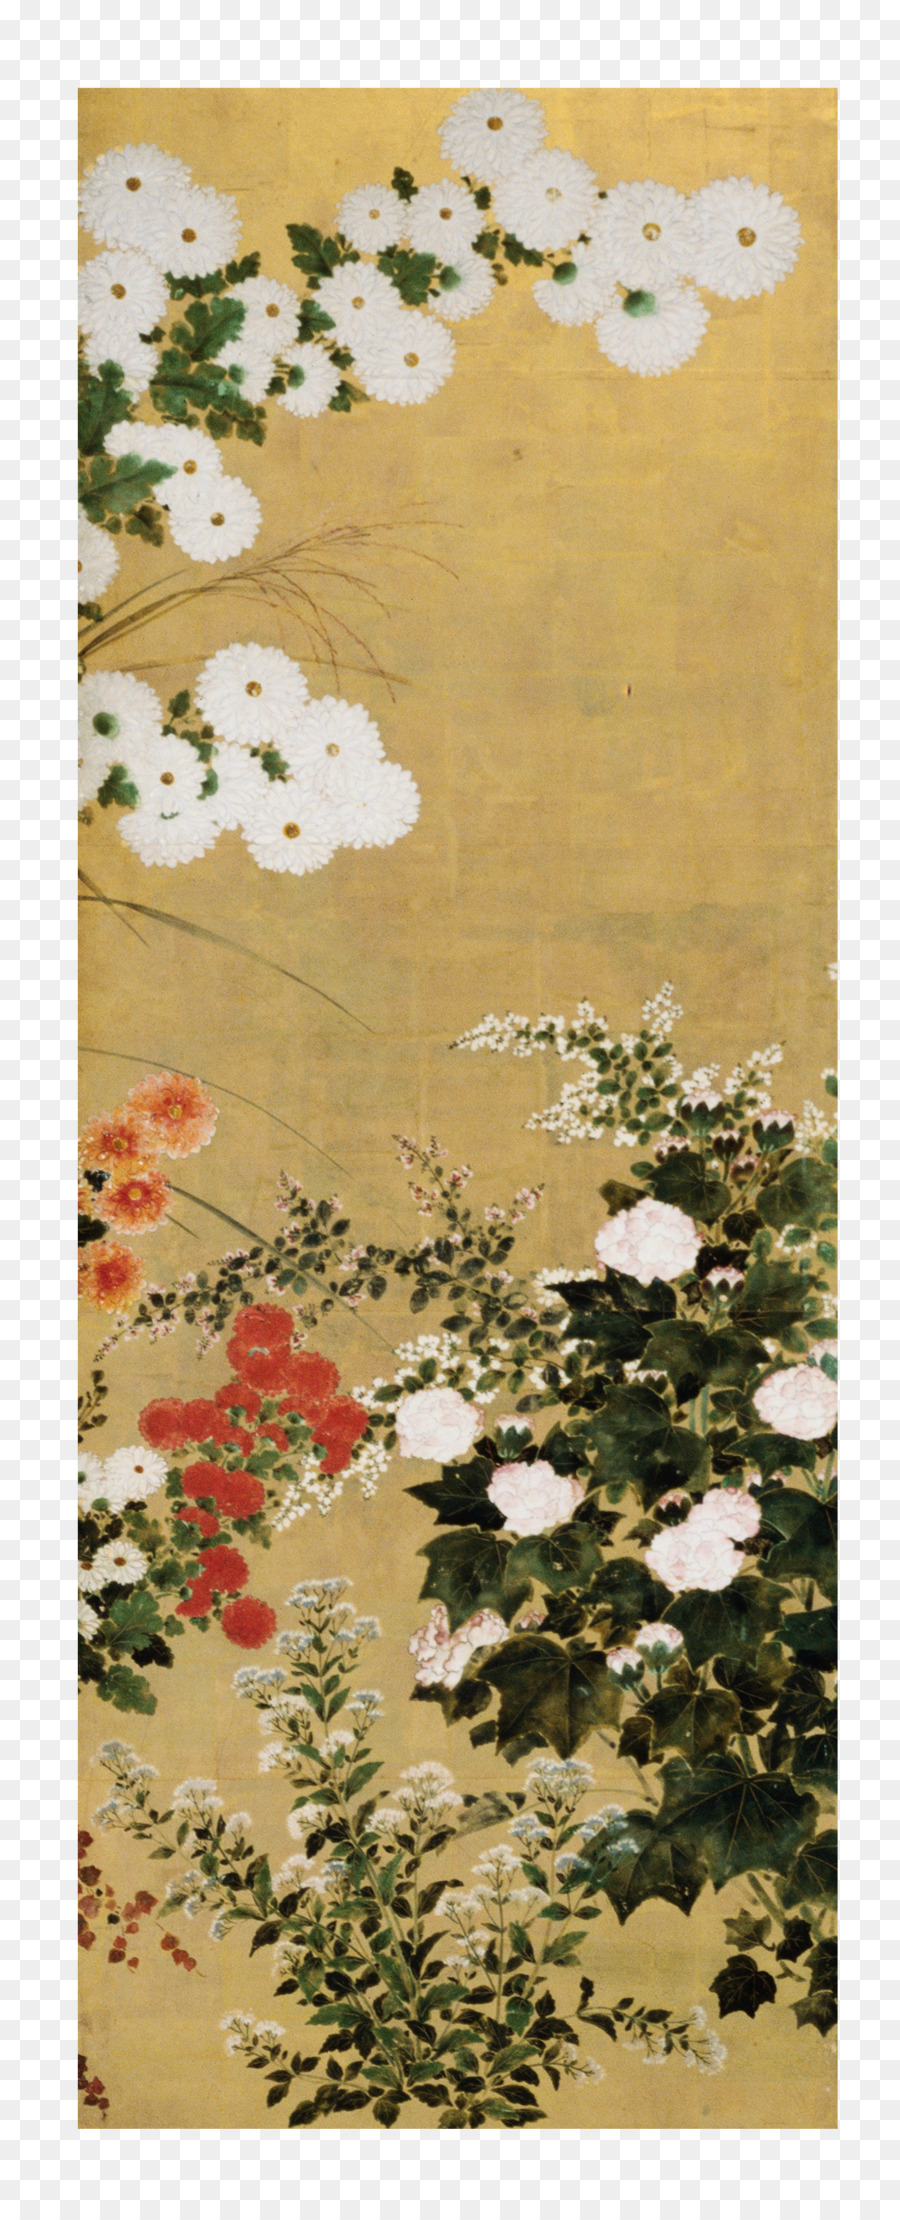 Japan, Malerei, Zeichnung - Japan japanische handgemalten dekorativen Muster material